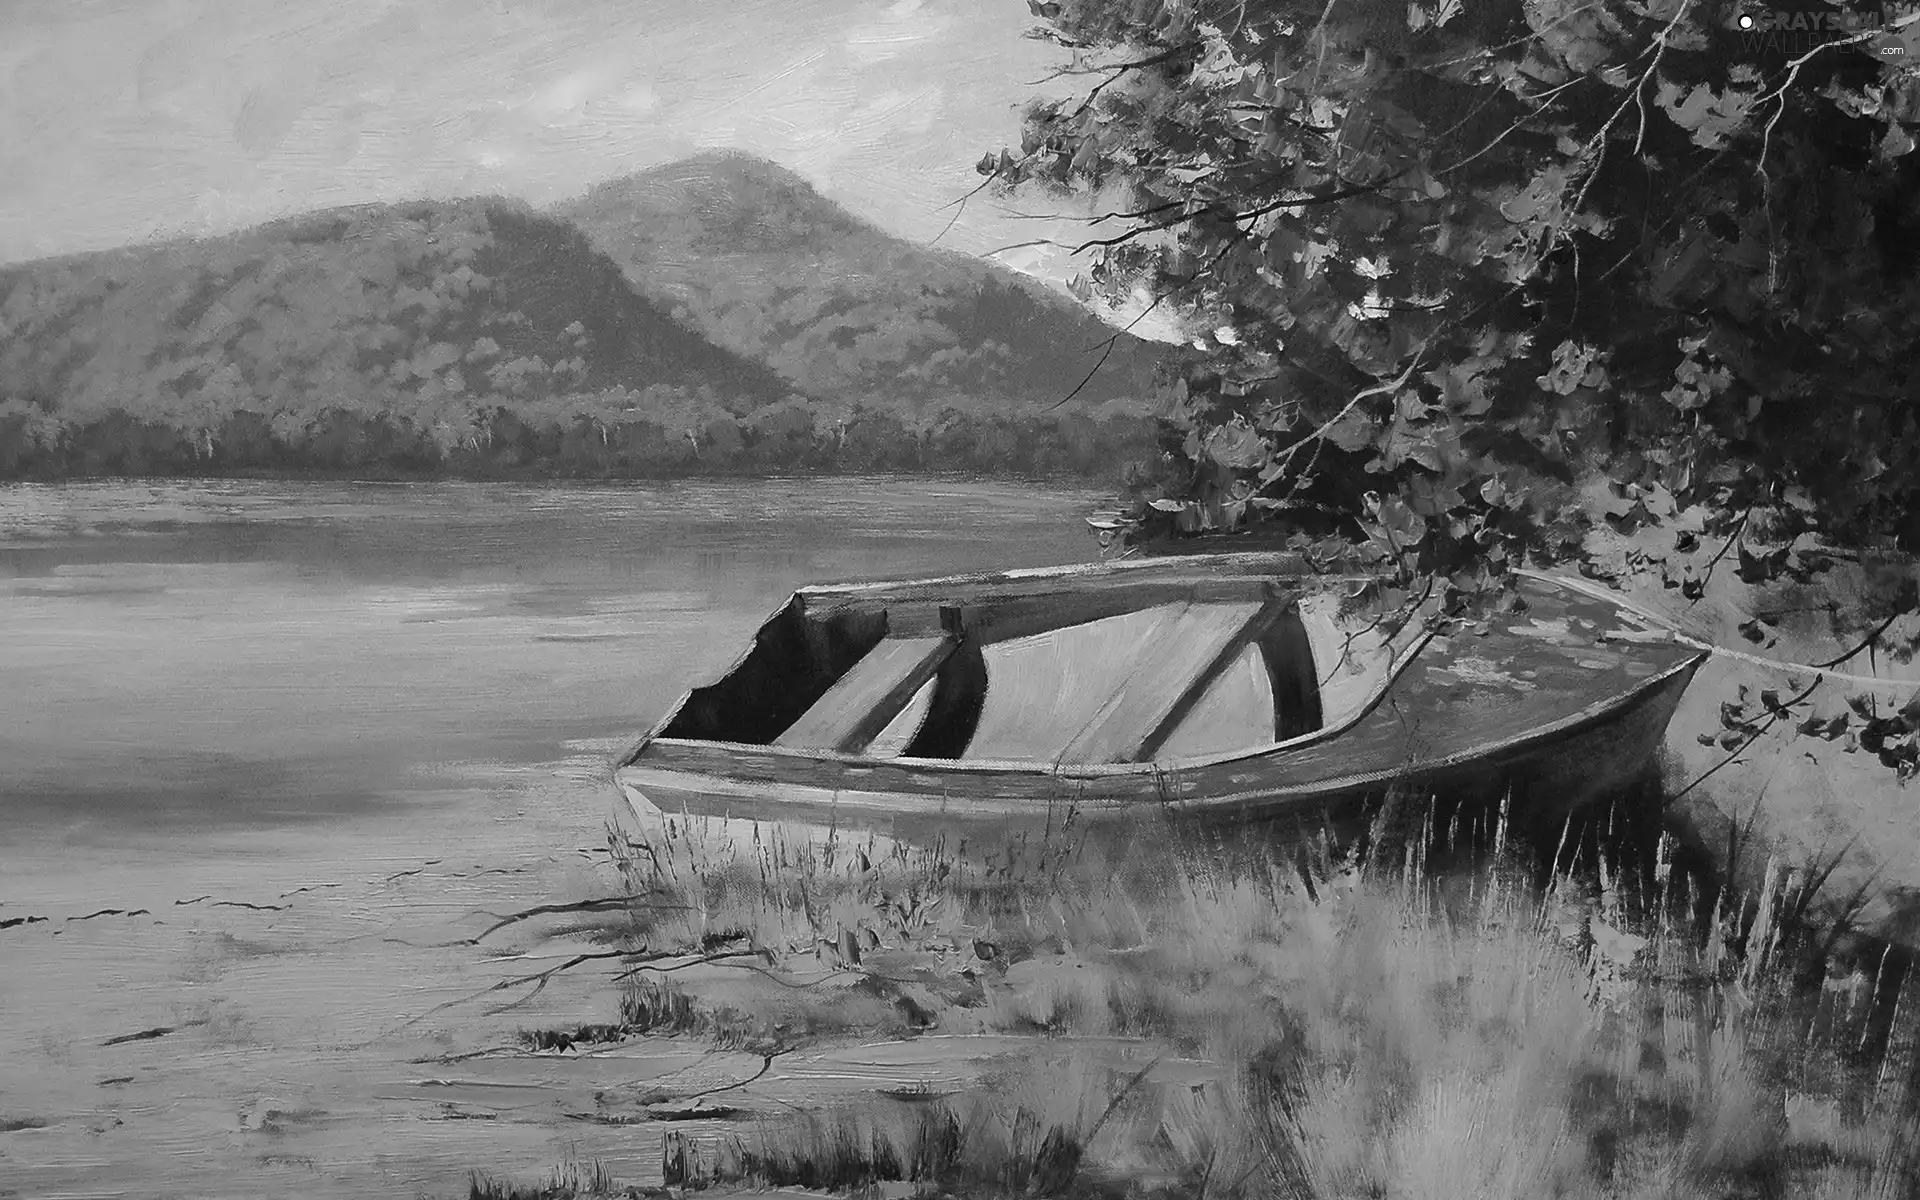 Boat, lake, Mountains